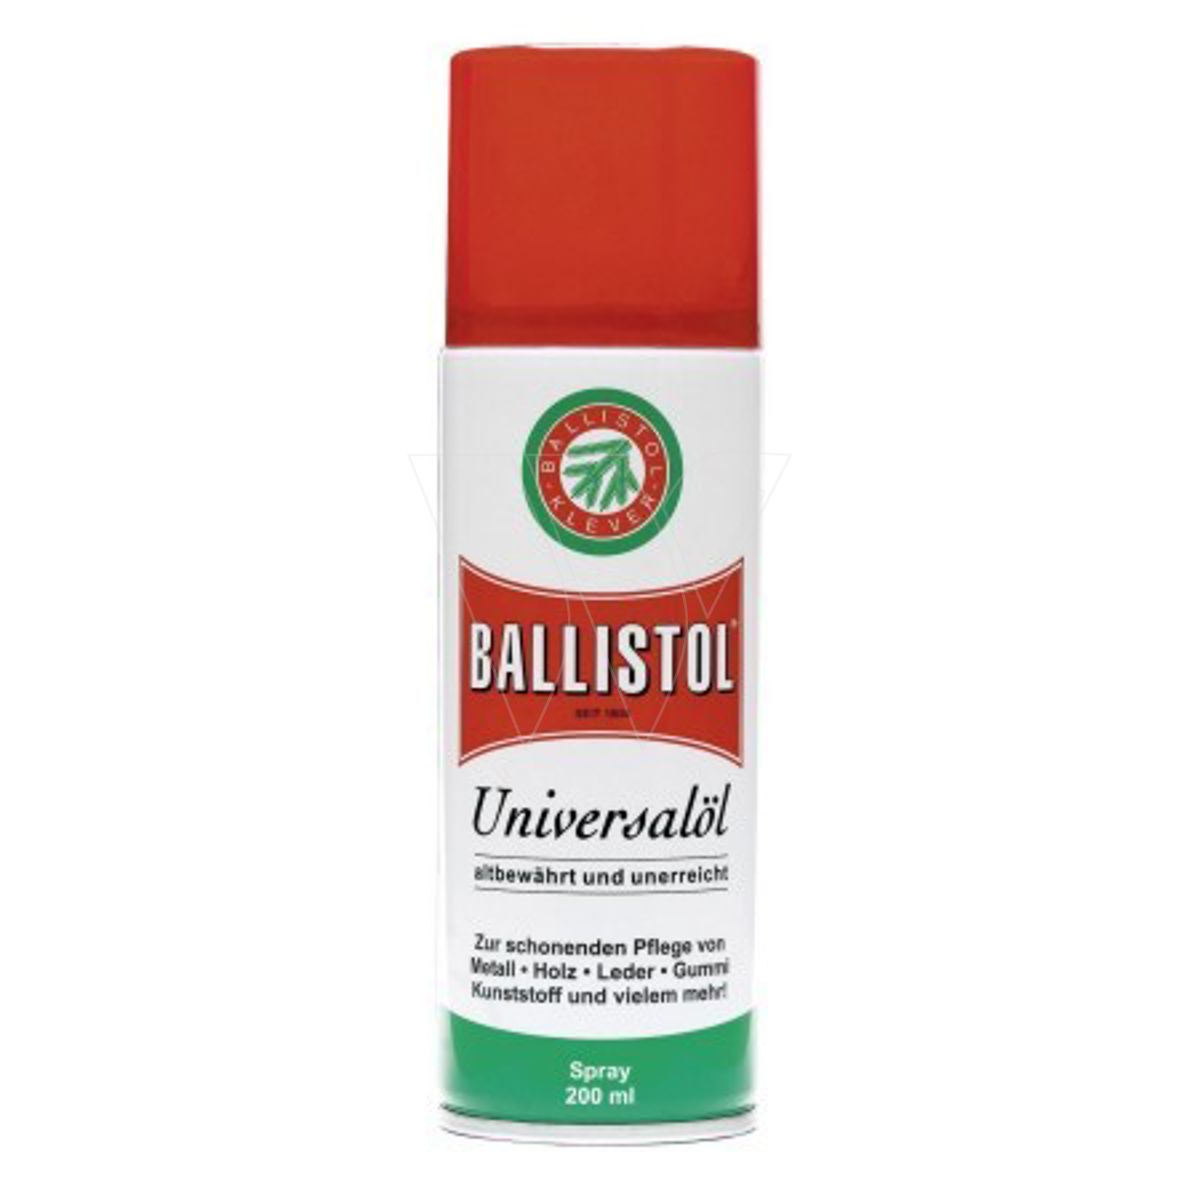 Ballistol universal oil spray 200 ml